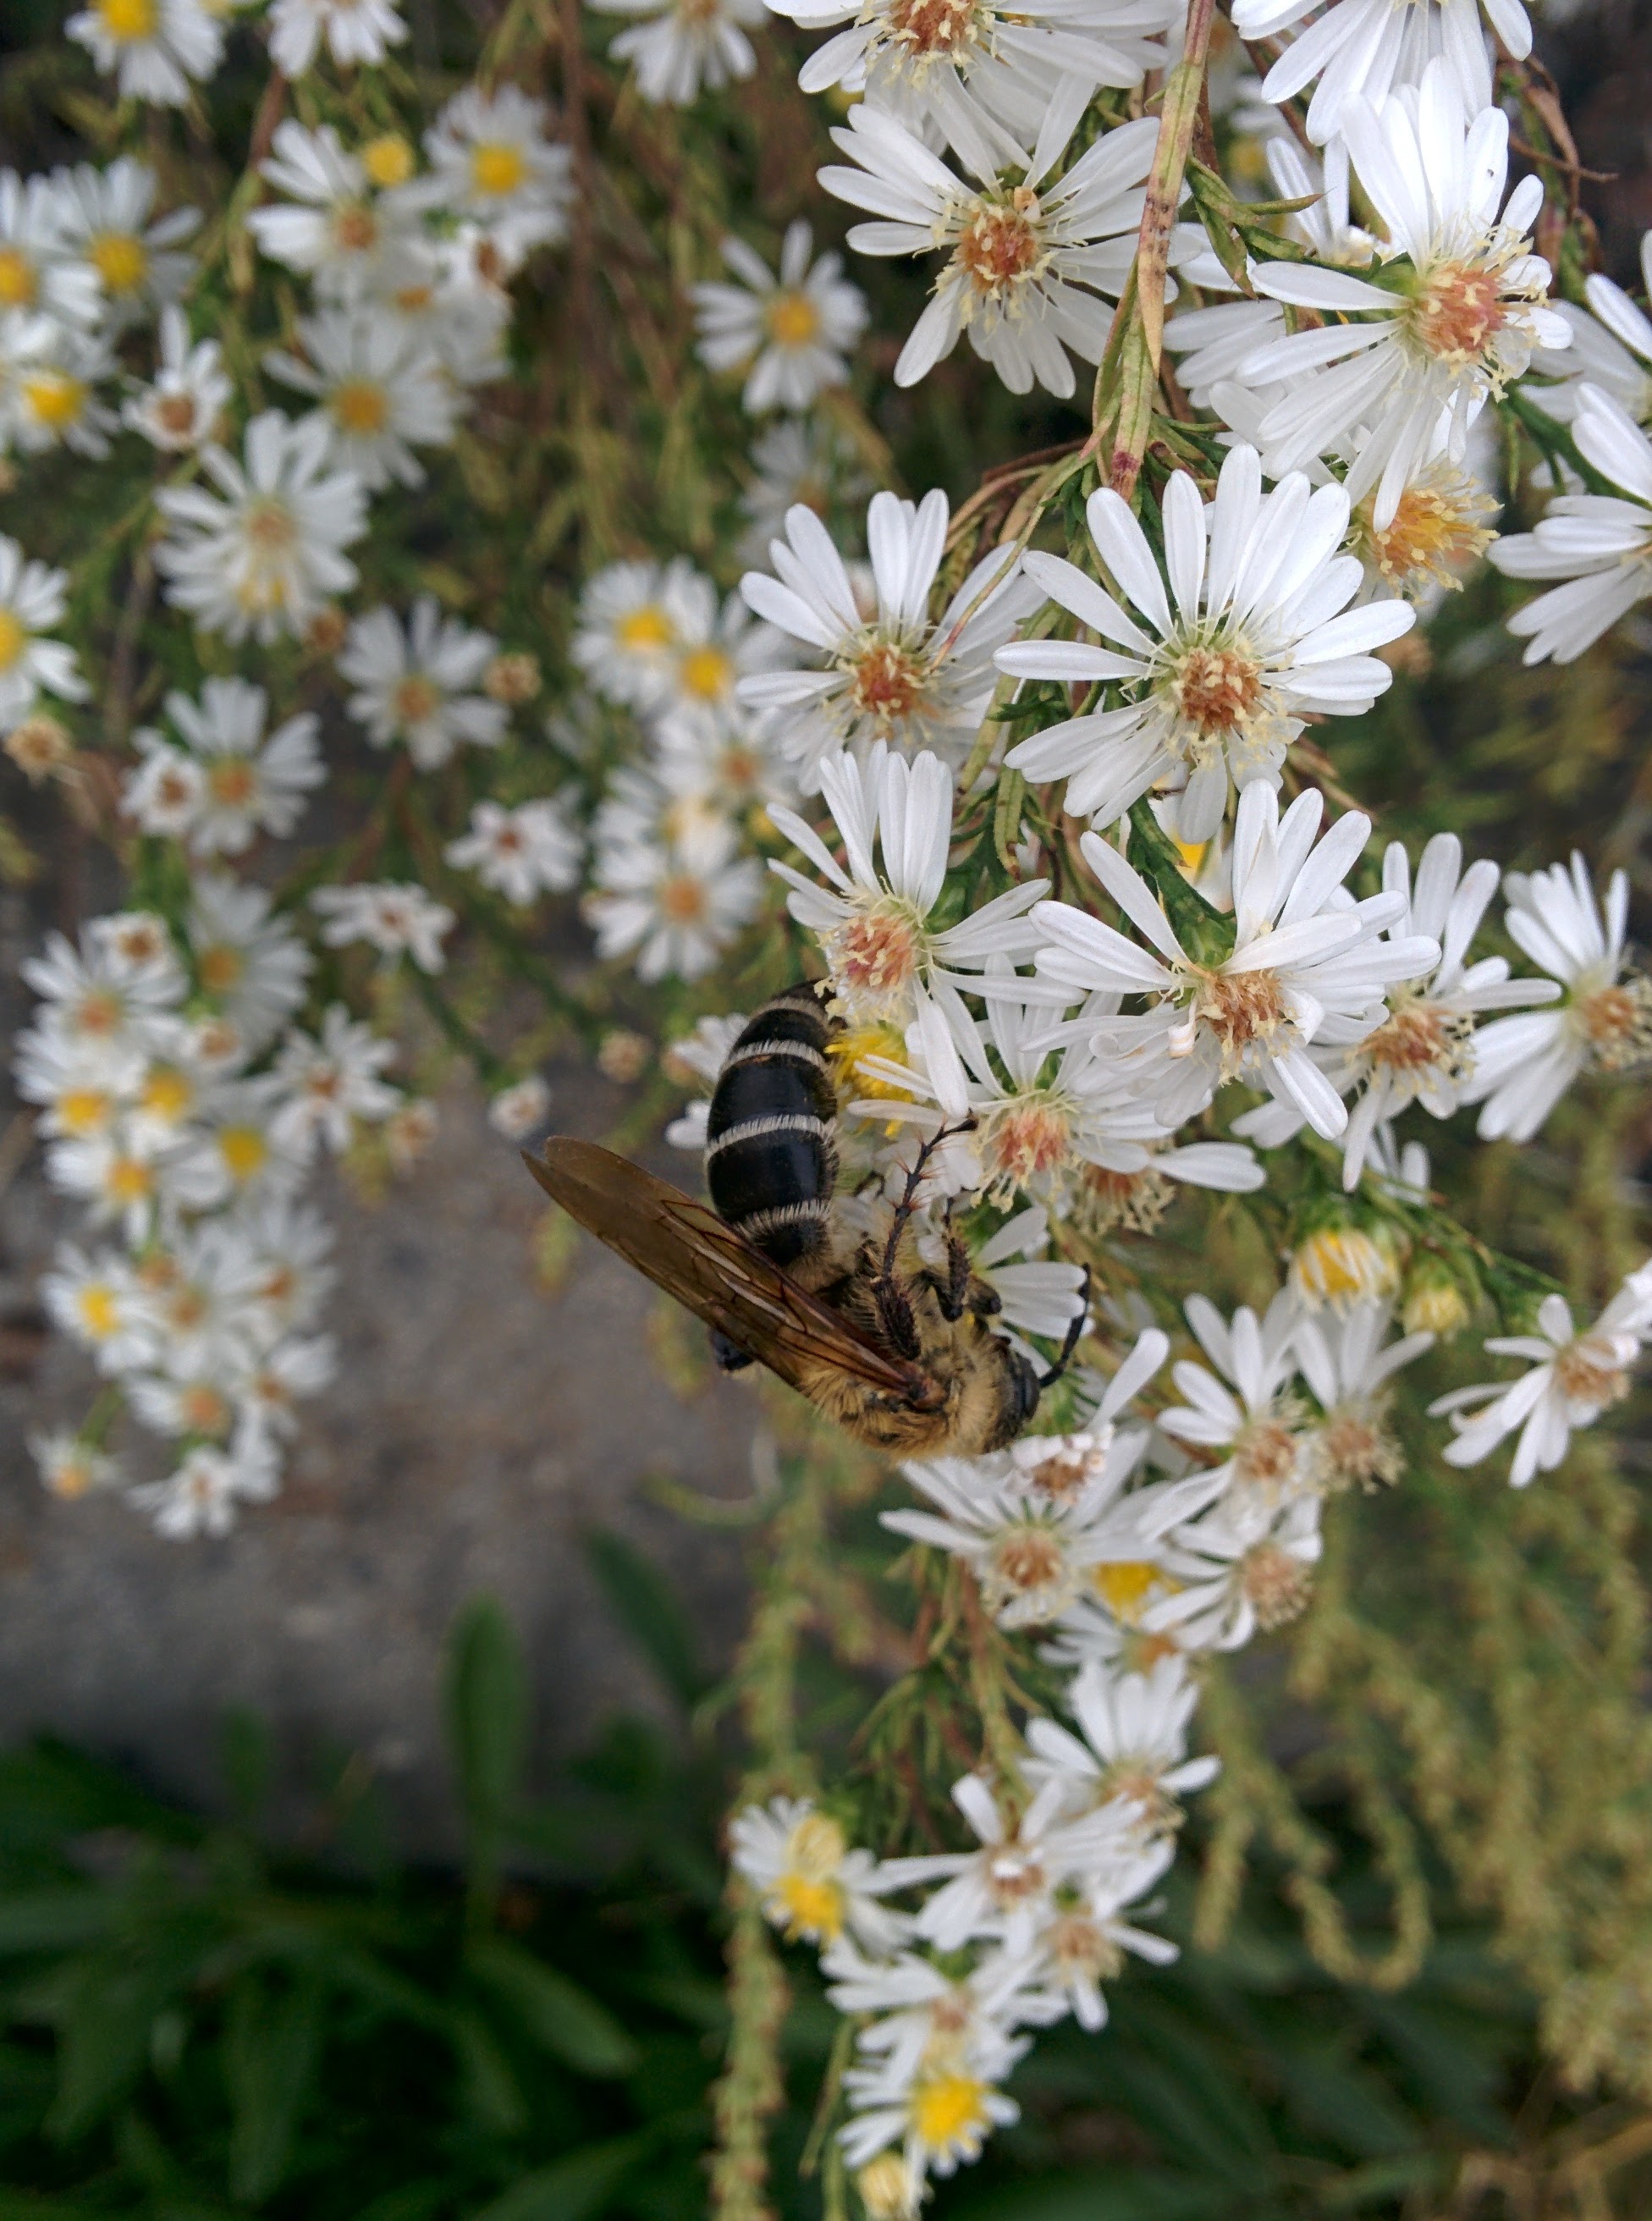 IMG_20151007_152315.jpg 미국쑥부쟁이 꽃을 찾은 대형 벌, 배벌 암컷